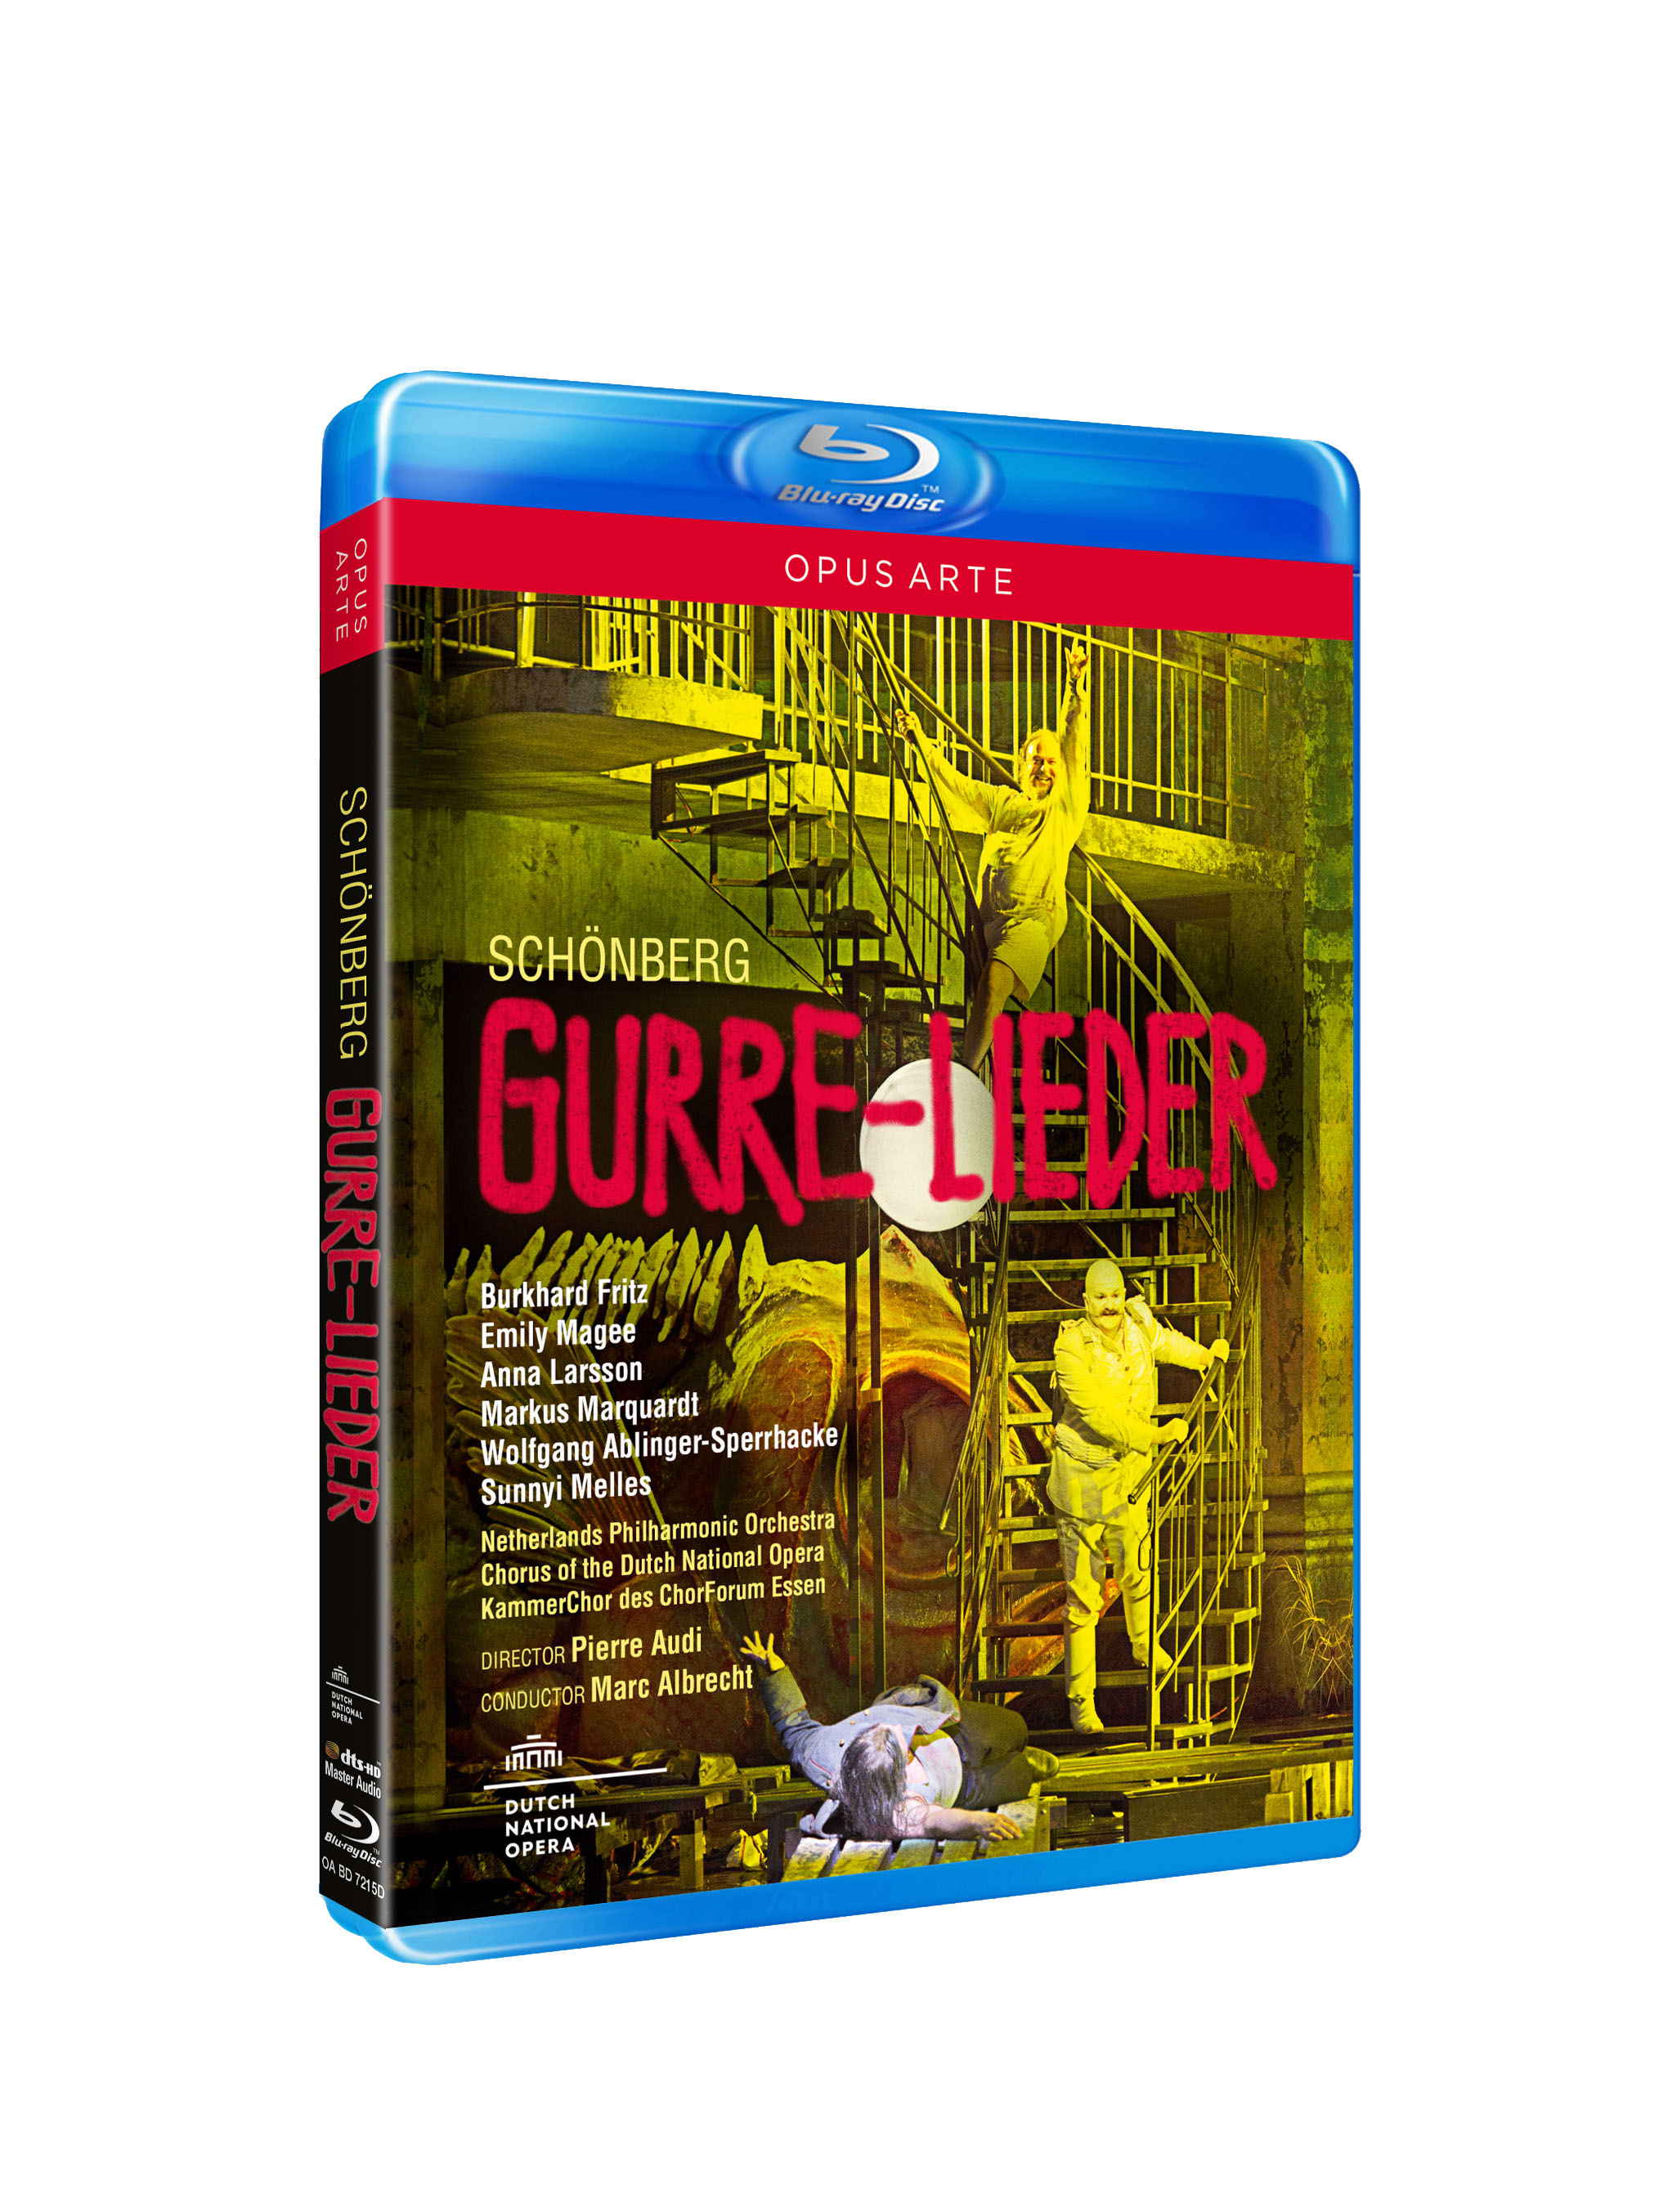 Arnold Schöenberg: Gurre-Lieder (Opus Arte OABD7215D) Blu-ray Disc Packshot